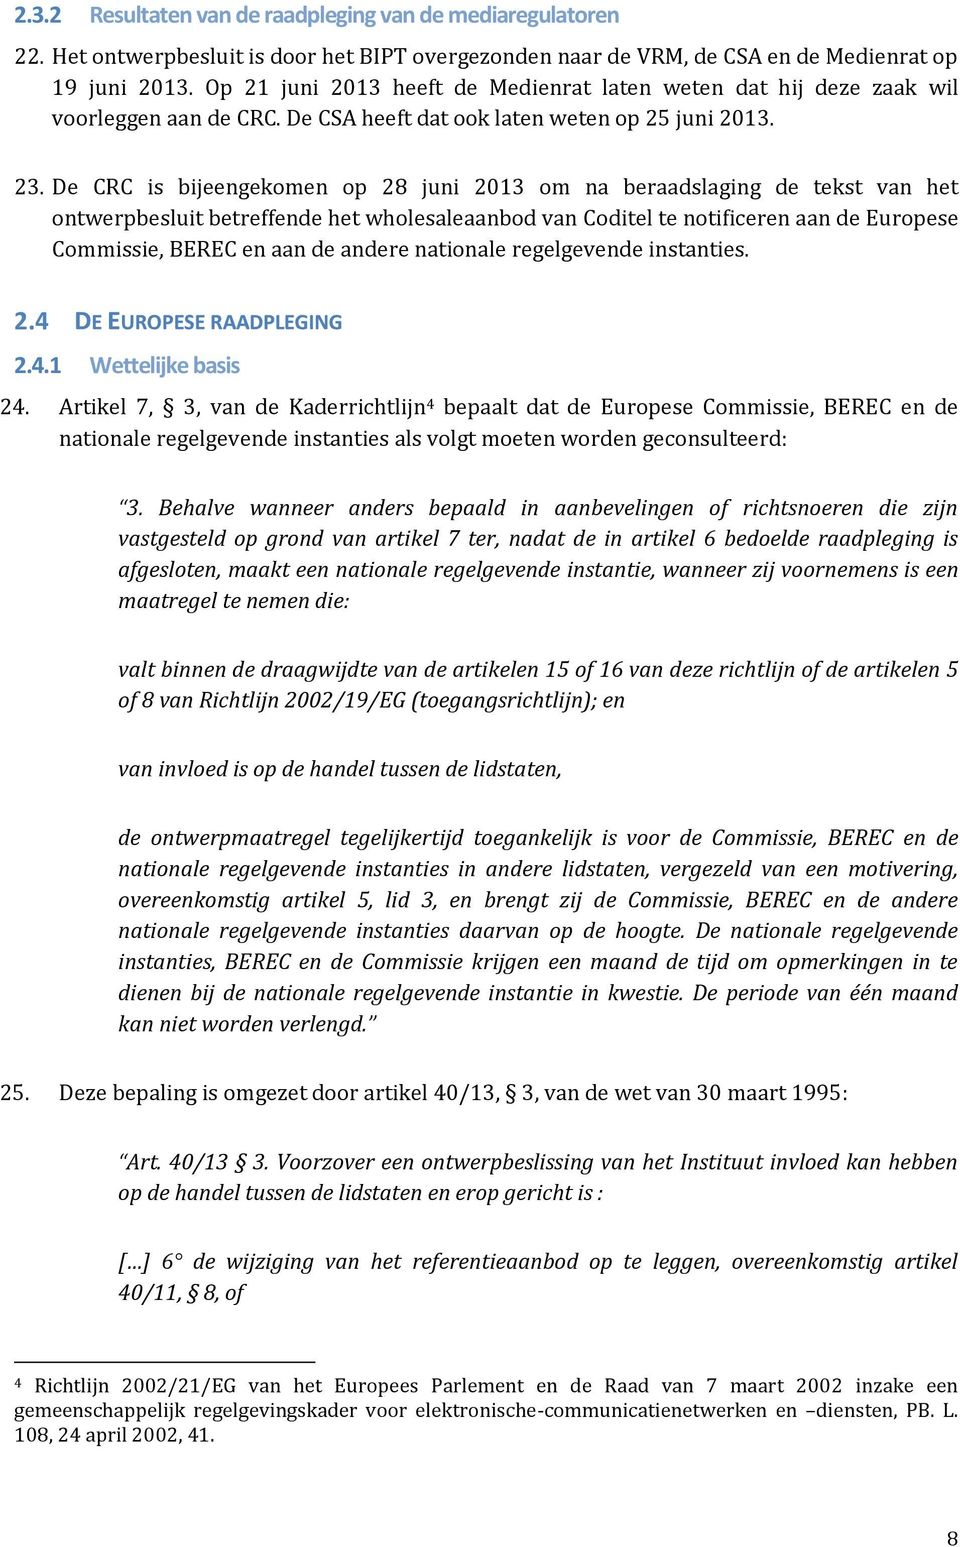 De CRC is bijeengekomen op 28 juni 2013 om na beraadslaging de tekst van het ontwerpbesluit betreffende het wholesaleaanbod van Coditel te notificeren aan de Europese Commissie, BEREC en aan de